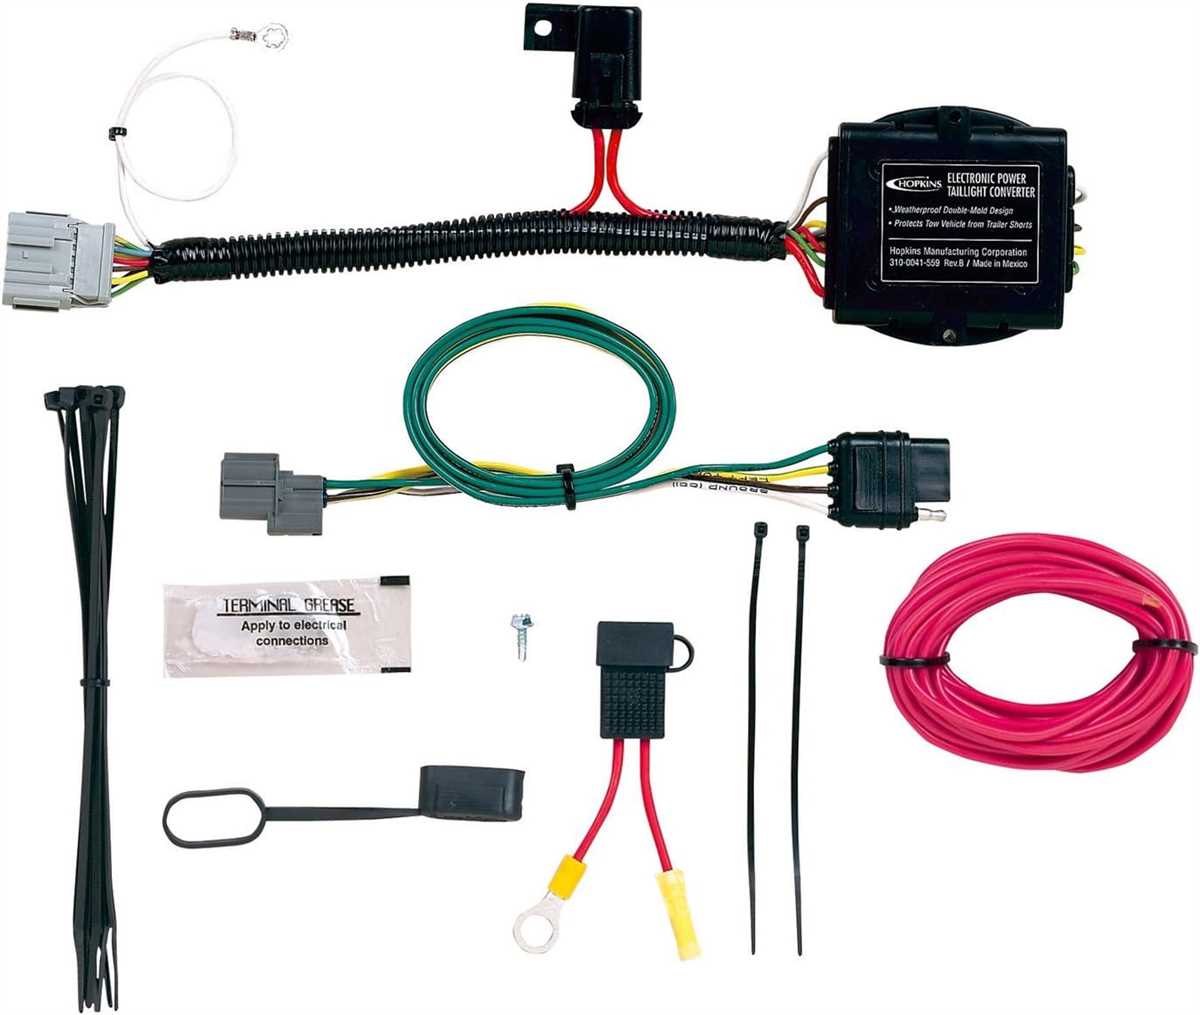 Plug-in simple wiring kit